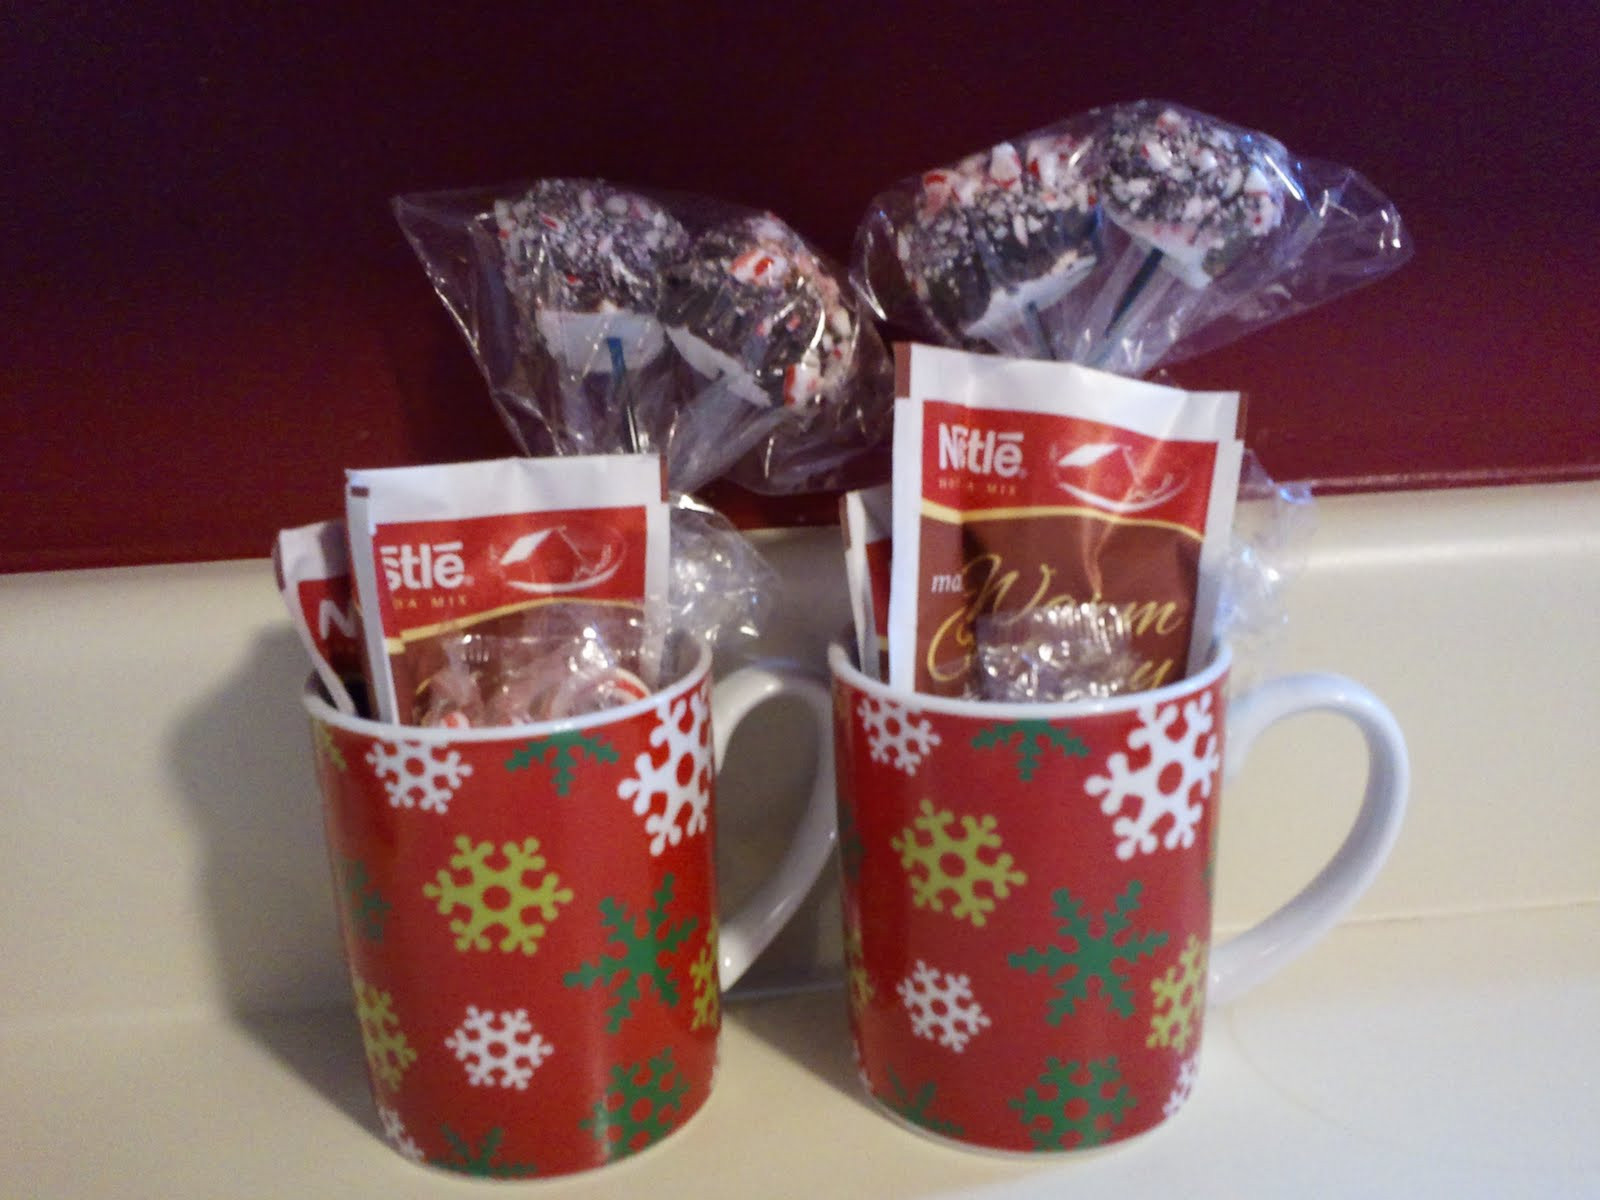 DIY Christmas Mug Gifts
 DIY Easy Homemade Christmas Gift Ideas